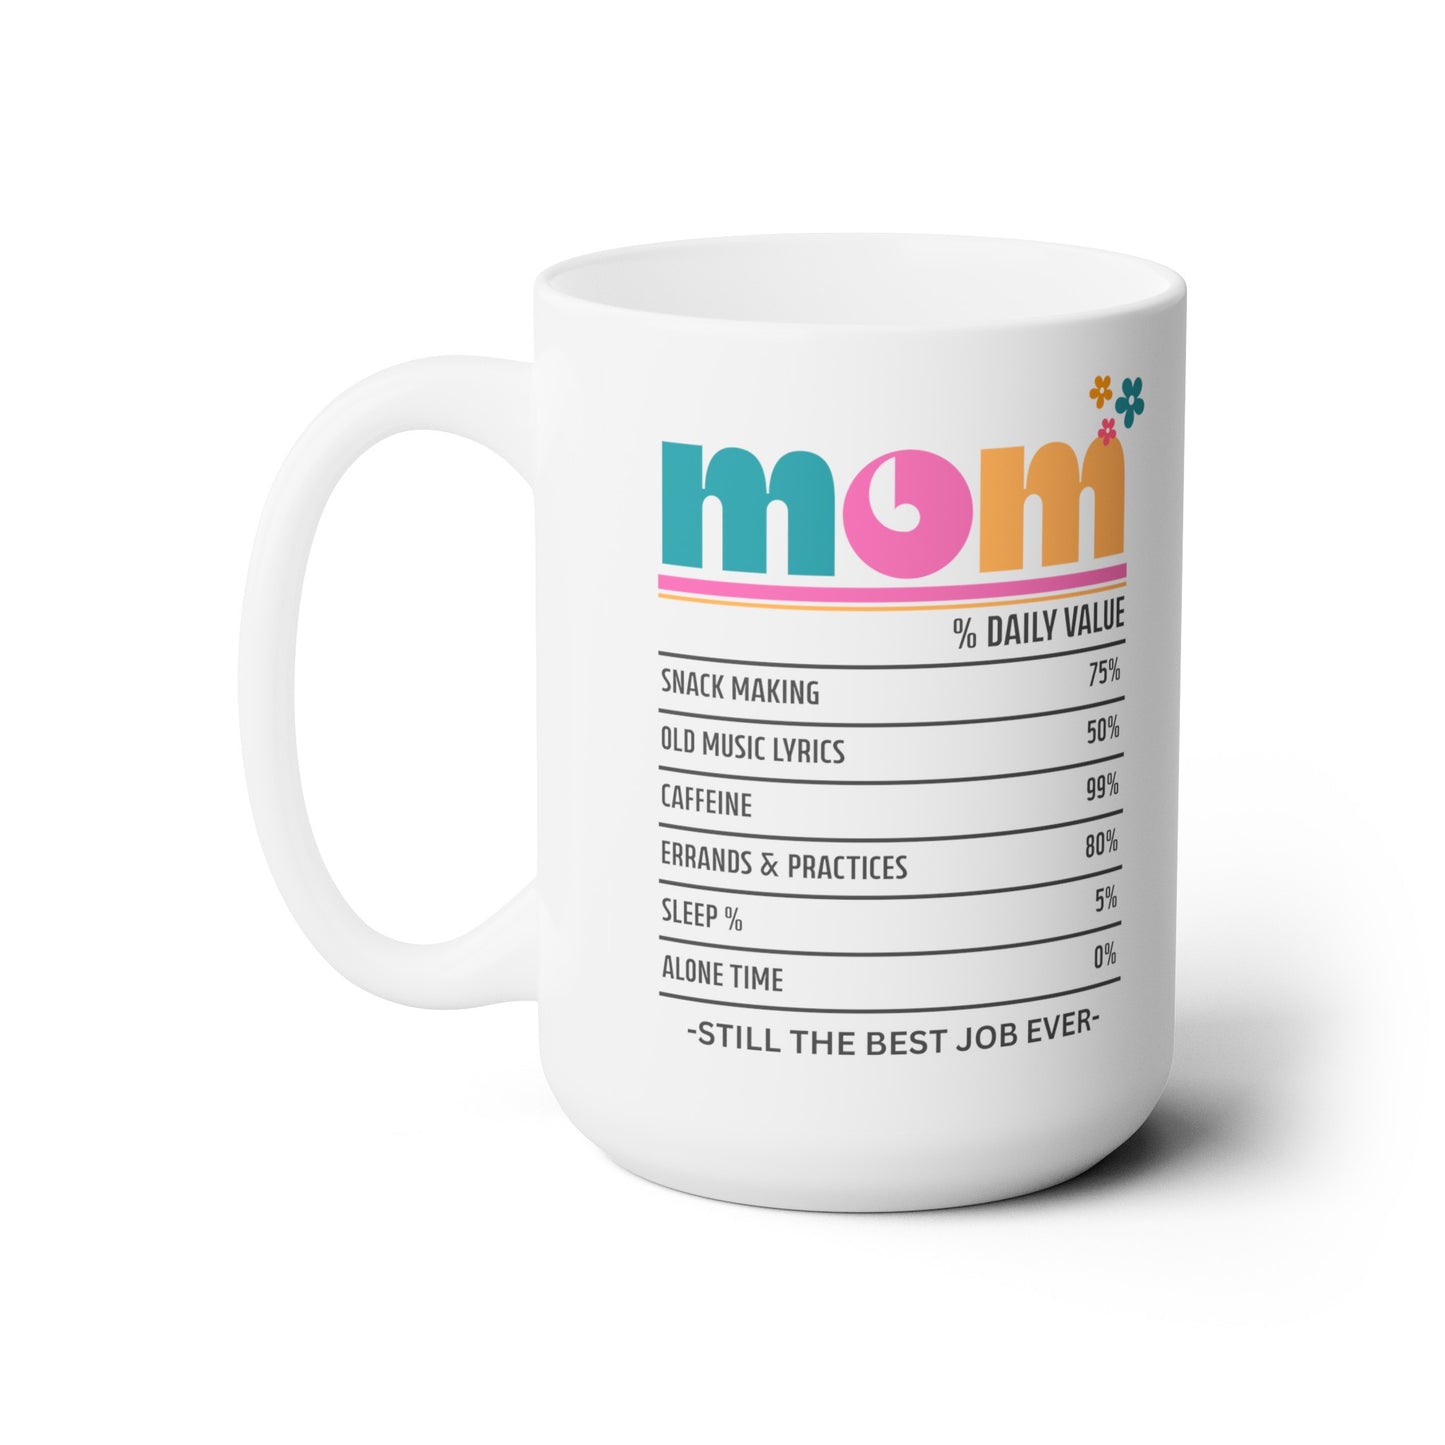 Mom - Best Job Ever Ceramic Mug (Bold Colors), 15 oz